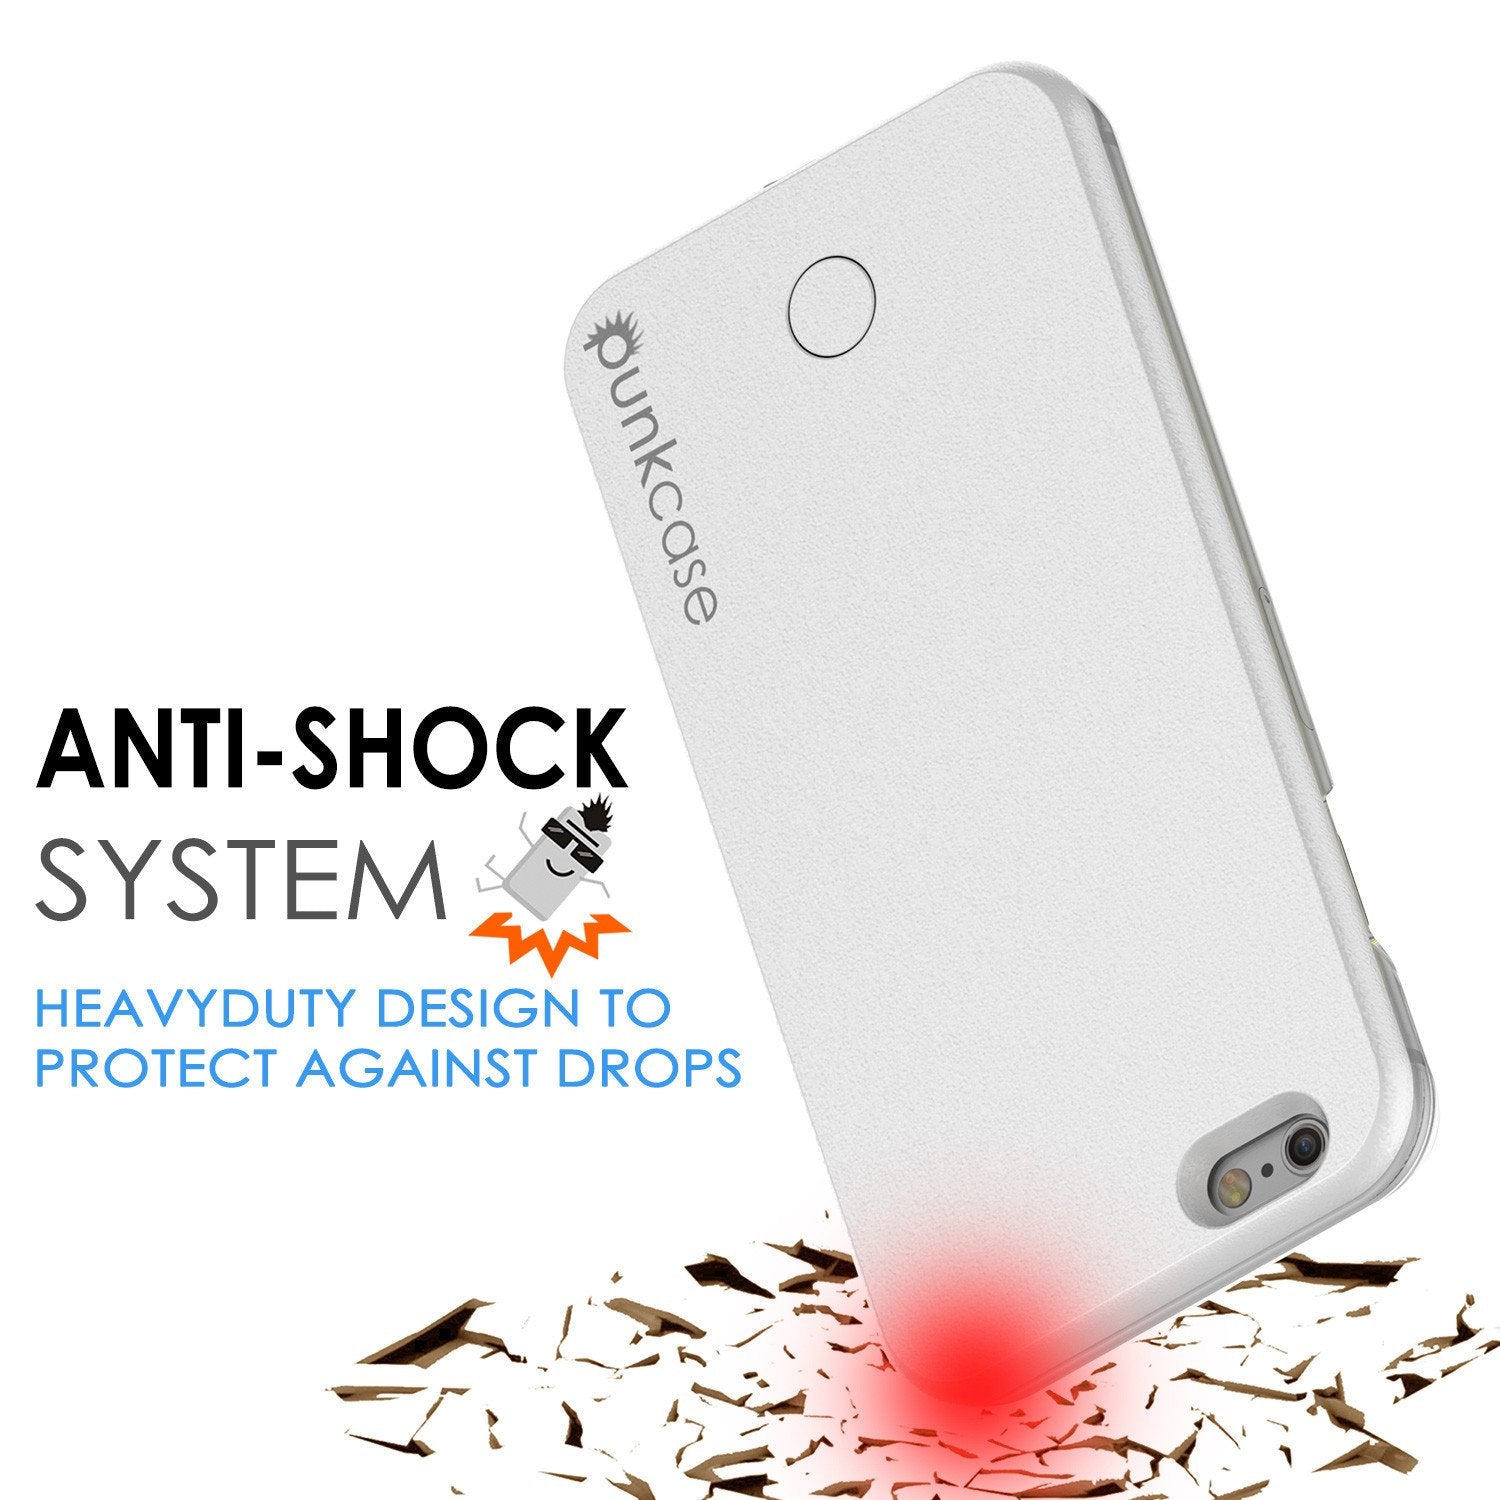 iPhone 6/6S Punkcase LED Light Case Light Illuminated Case, WHITE W/  Battery Power Bank